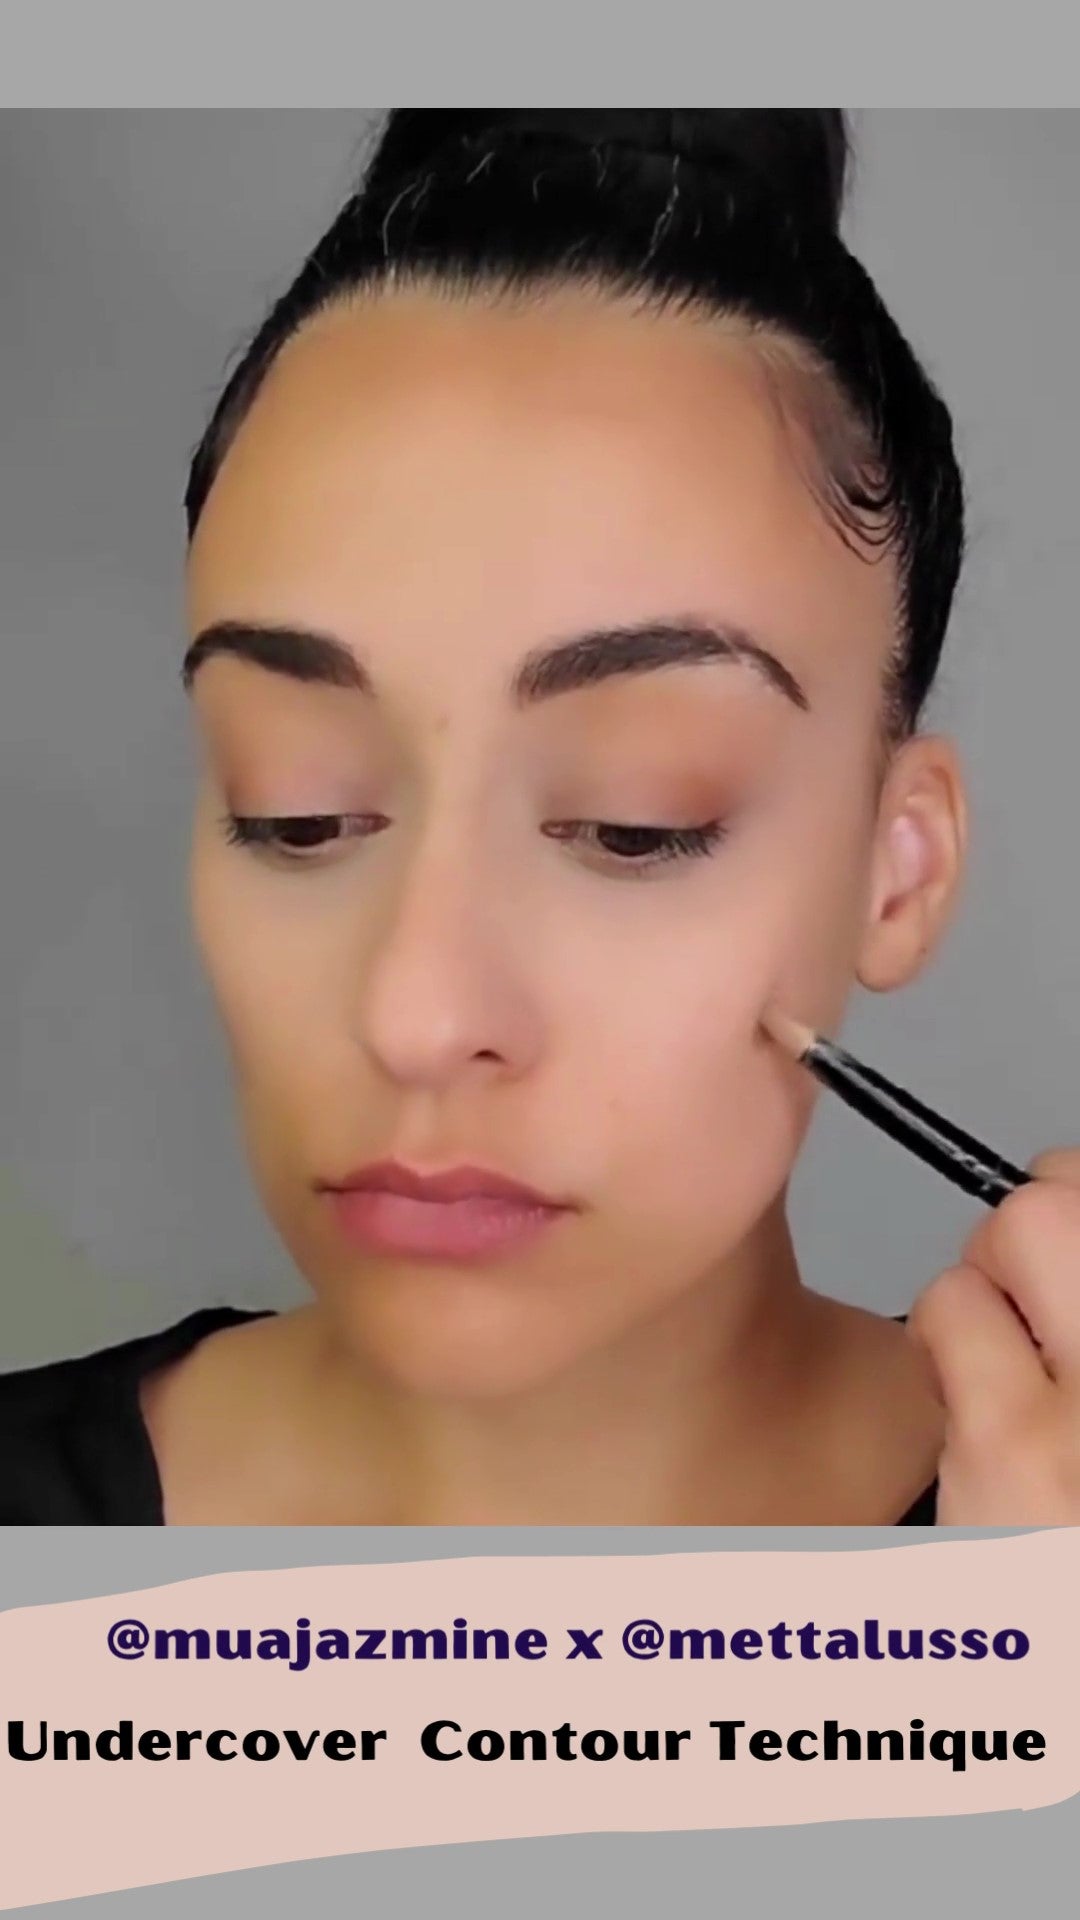 Mettalusso contour technique and all vegan makeup